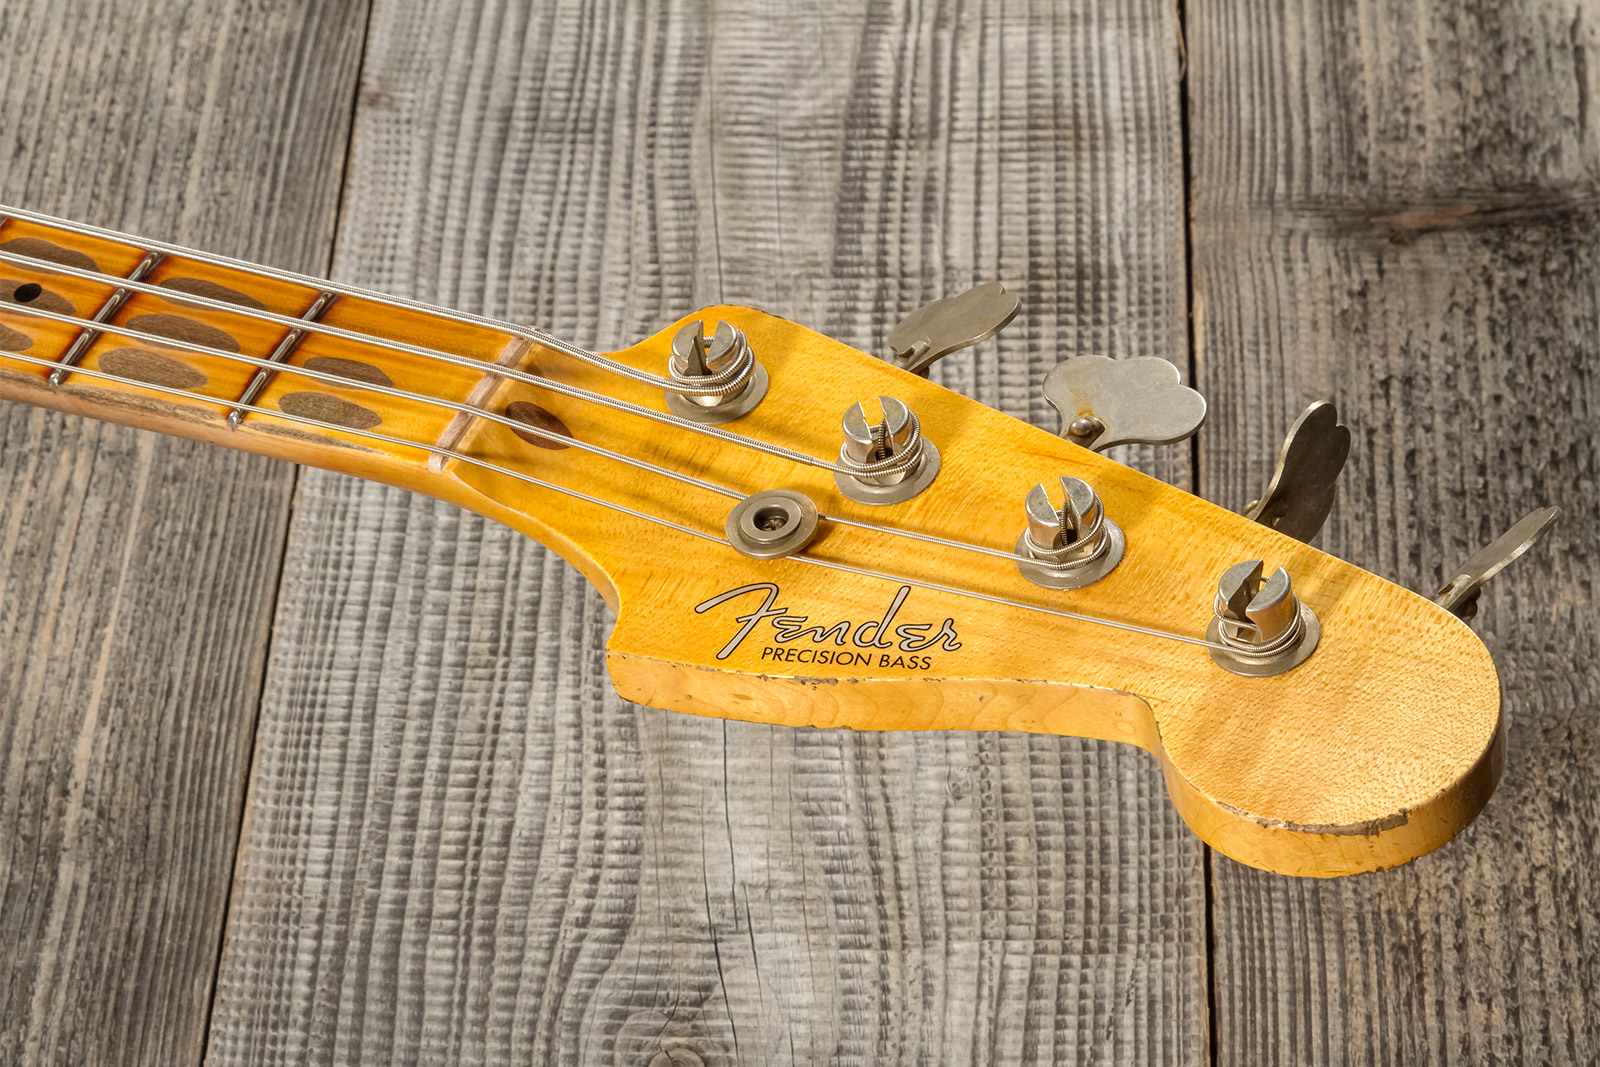 Fender Custom Shop Precision Bass 1958 Mn #cz573256 - Heavy Relic 3-color Sunburst - Solidbody E-bass - Variation 10